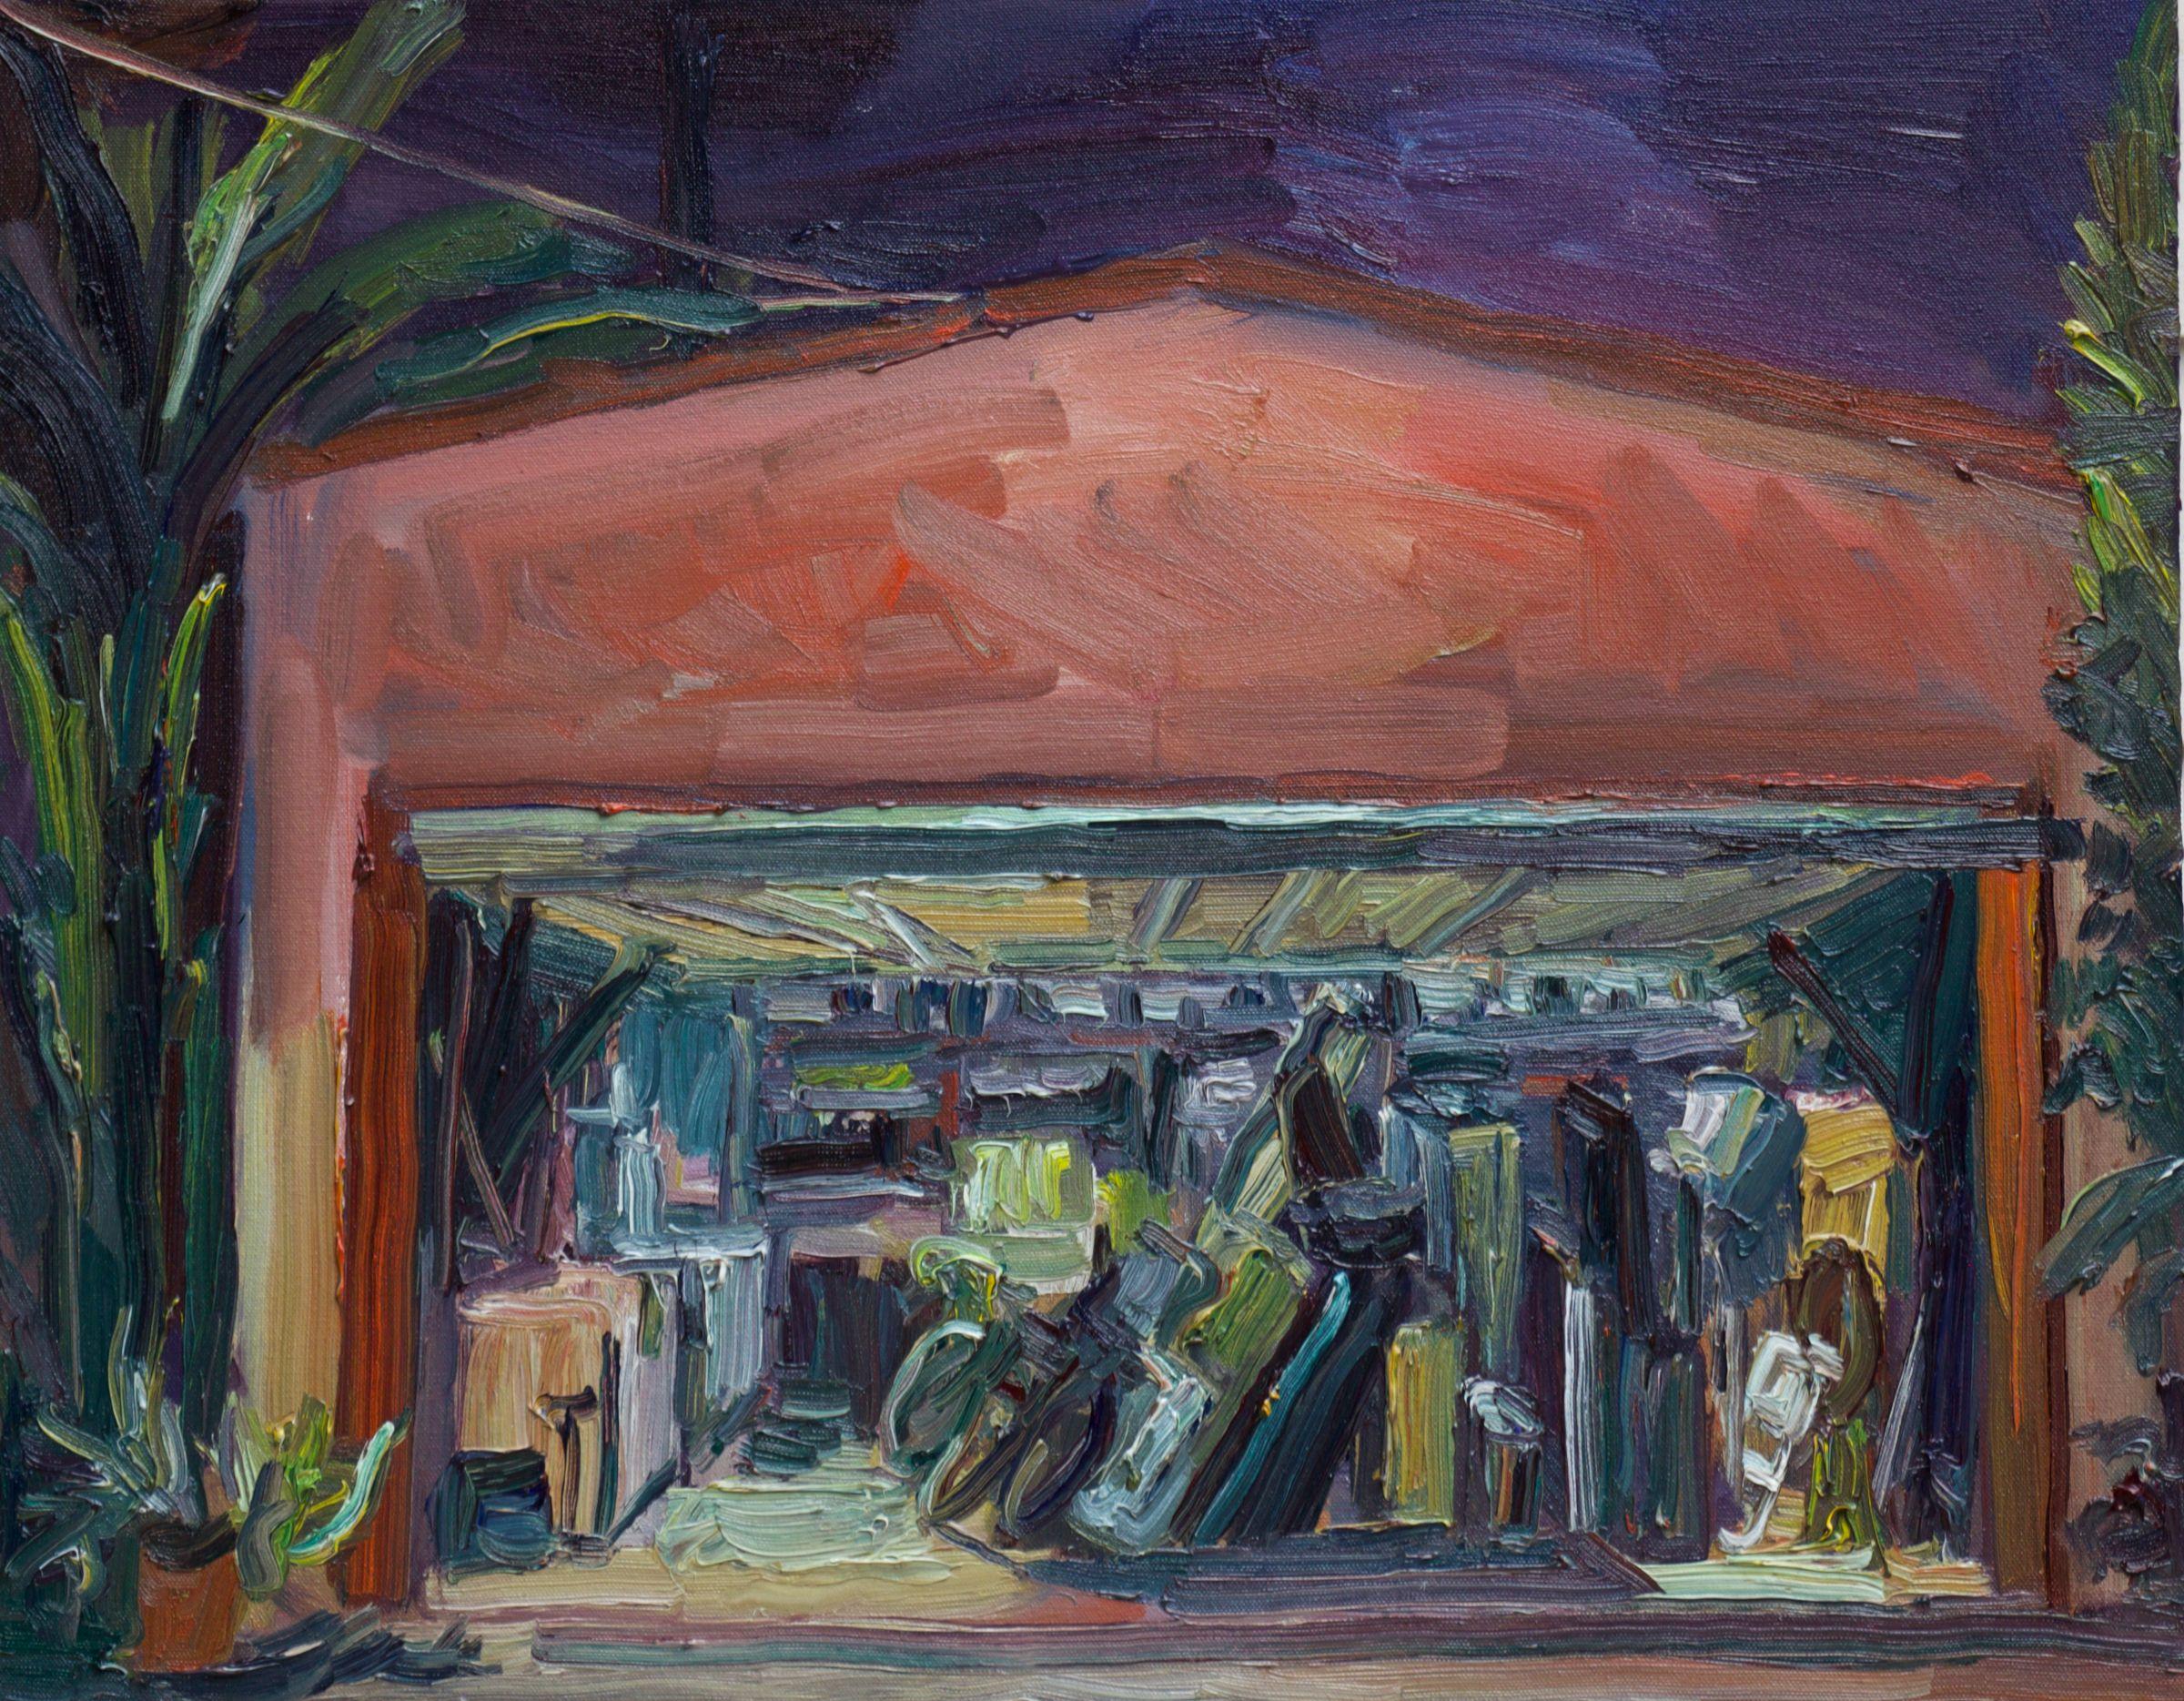 Garage de nuit, peinture, huile sur toile - Painting de John Kilduff